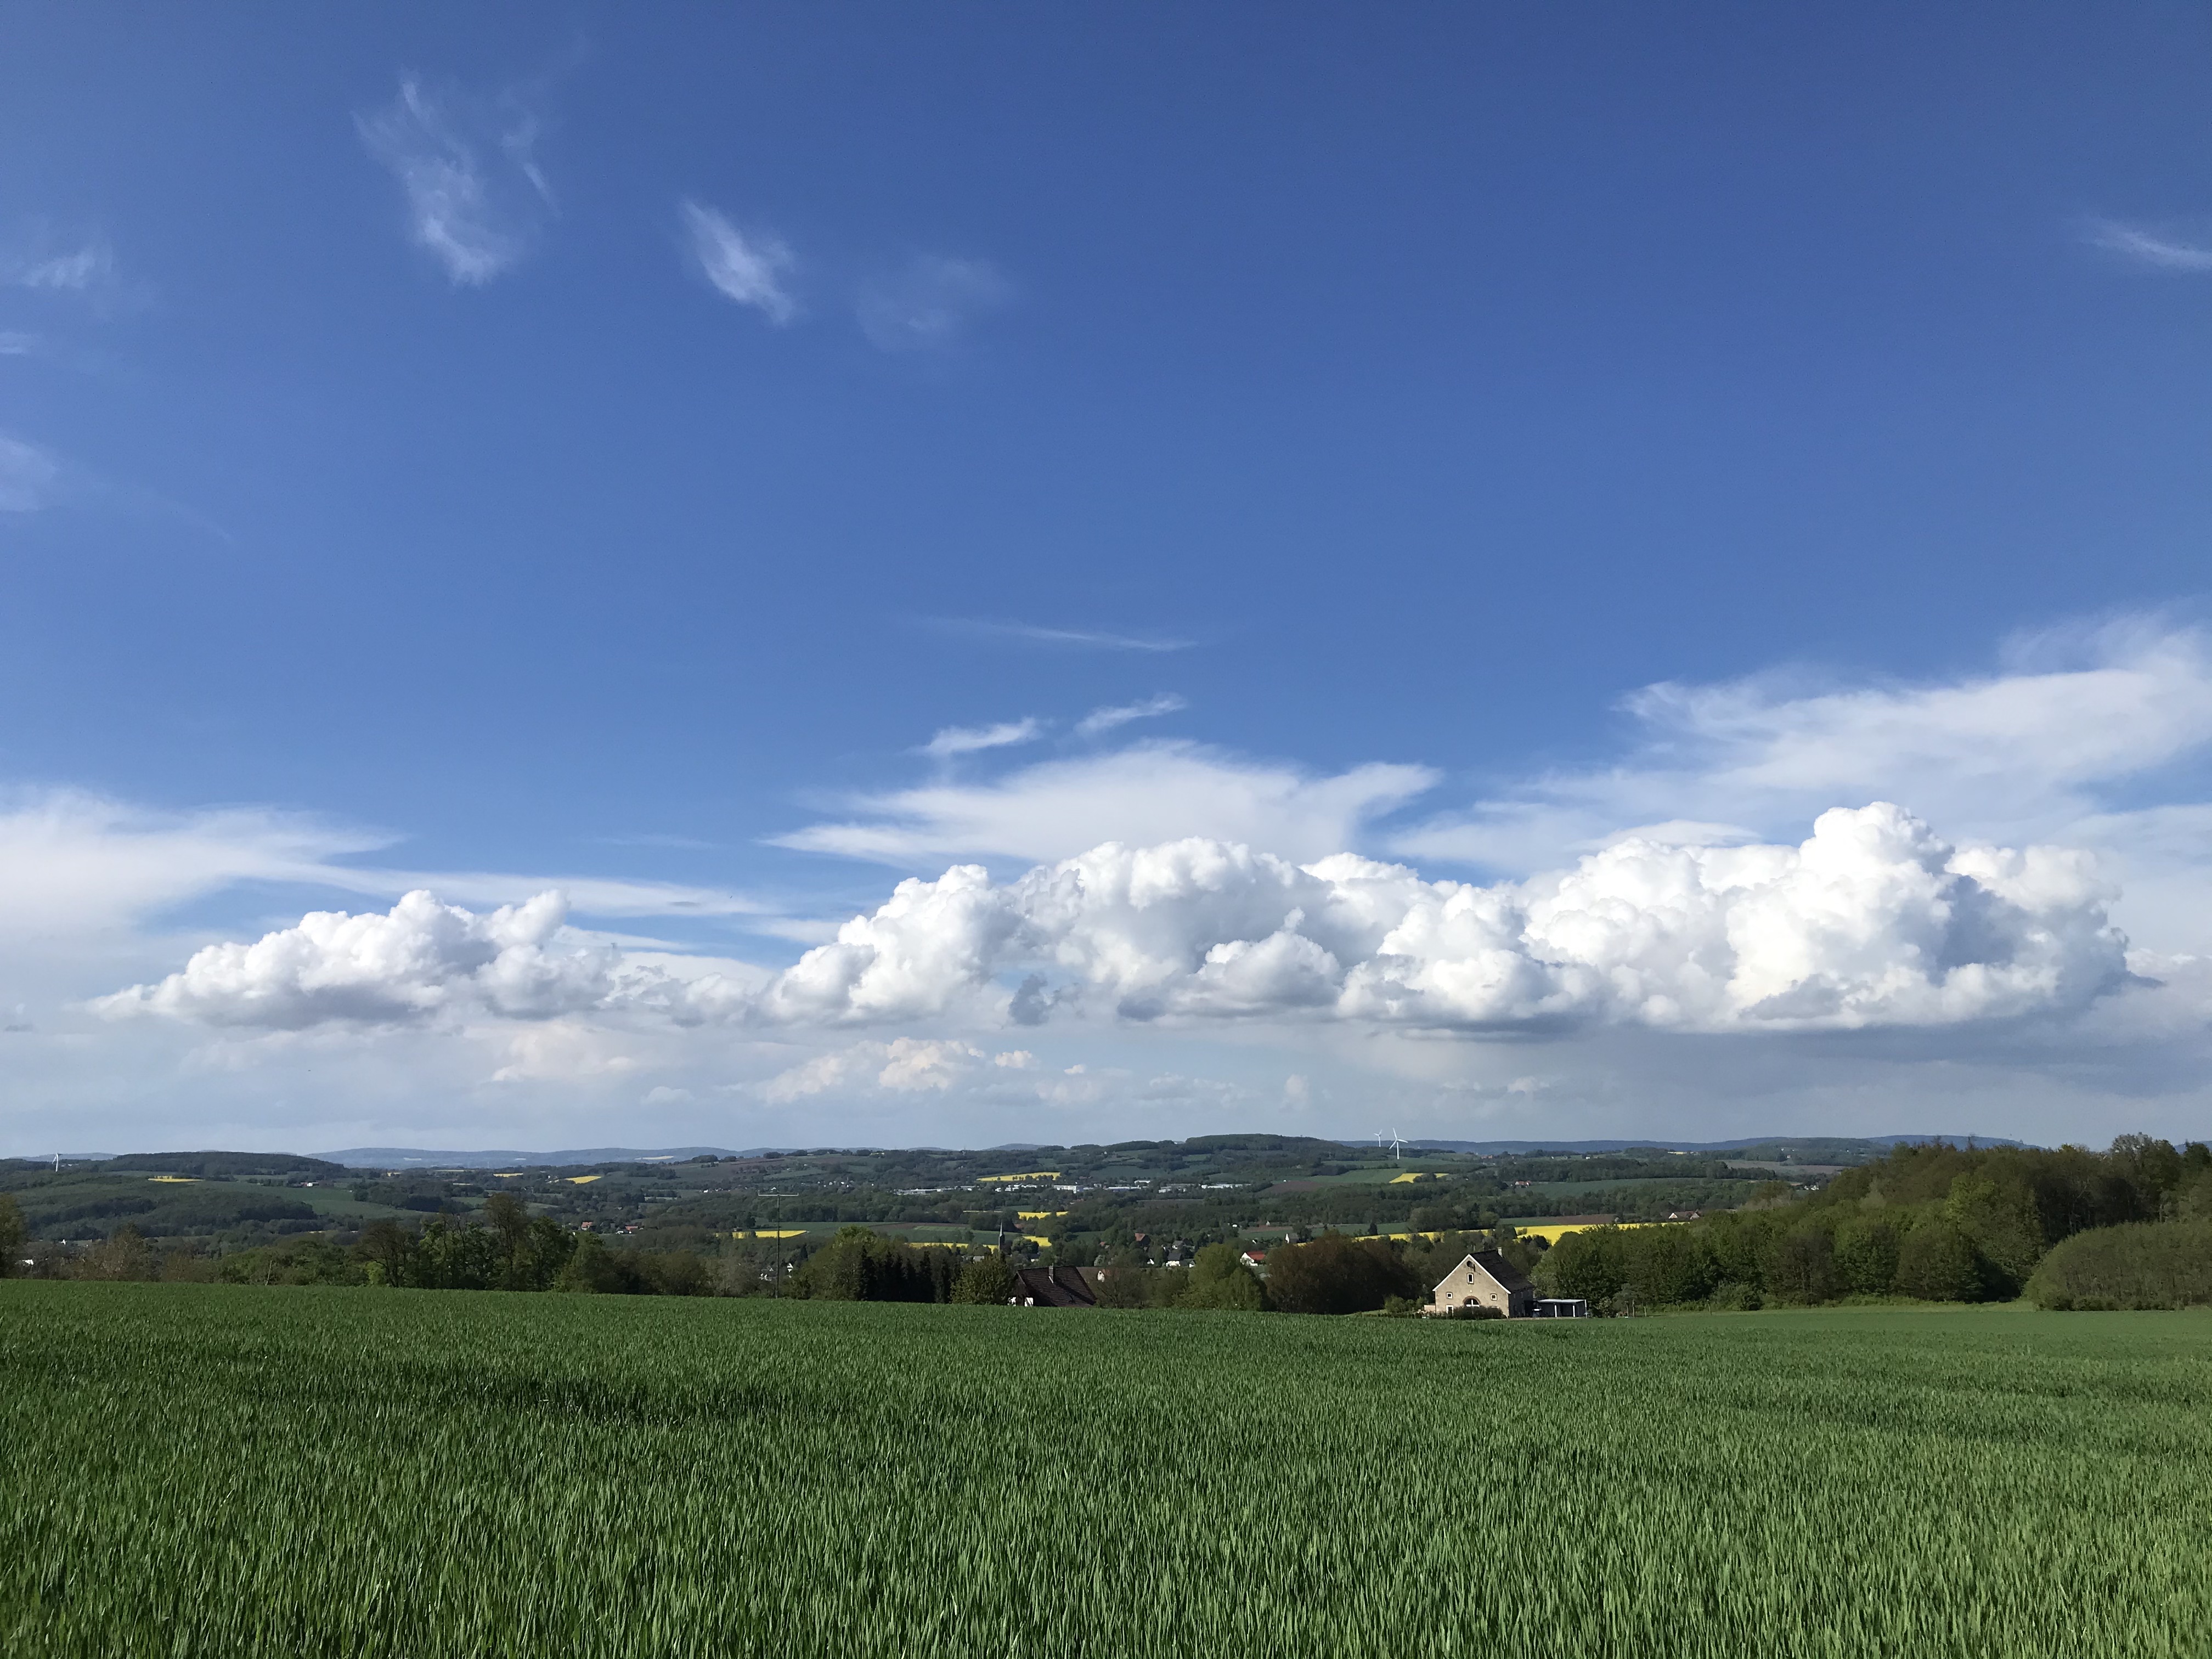 Photo: Lippelandschaft im Sommer. Blauer Himmel, grünes Feld, Häuser in der Ferne.